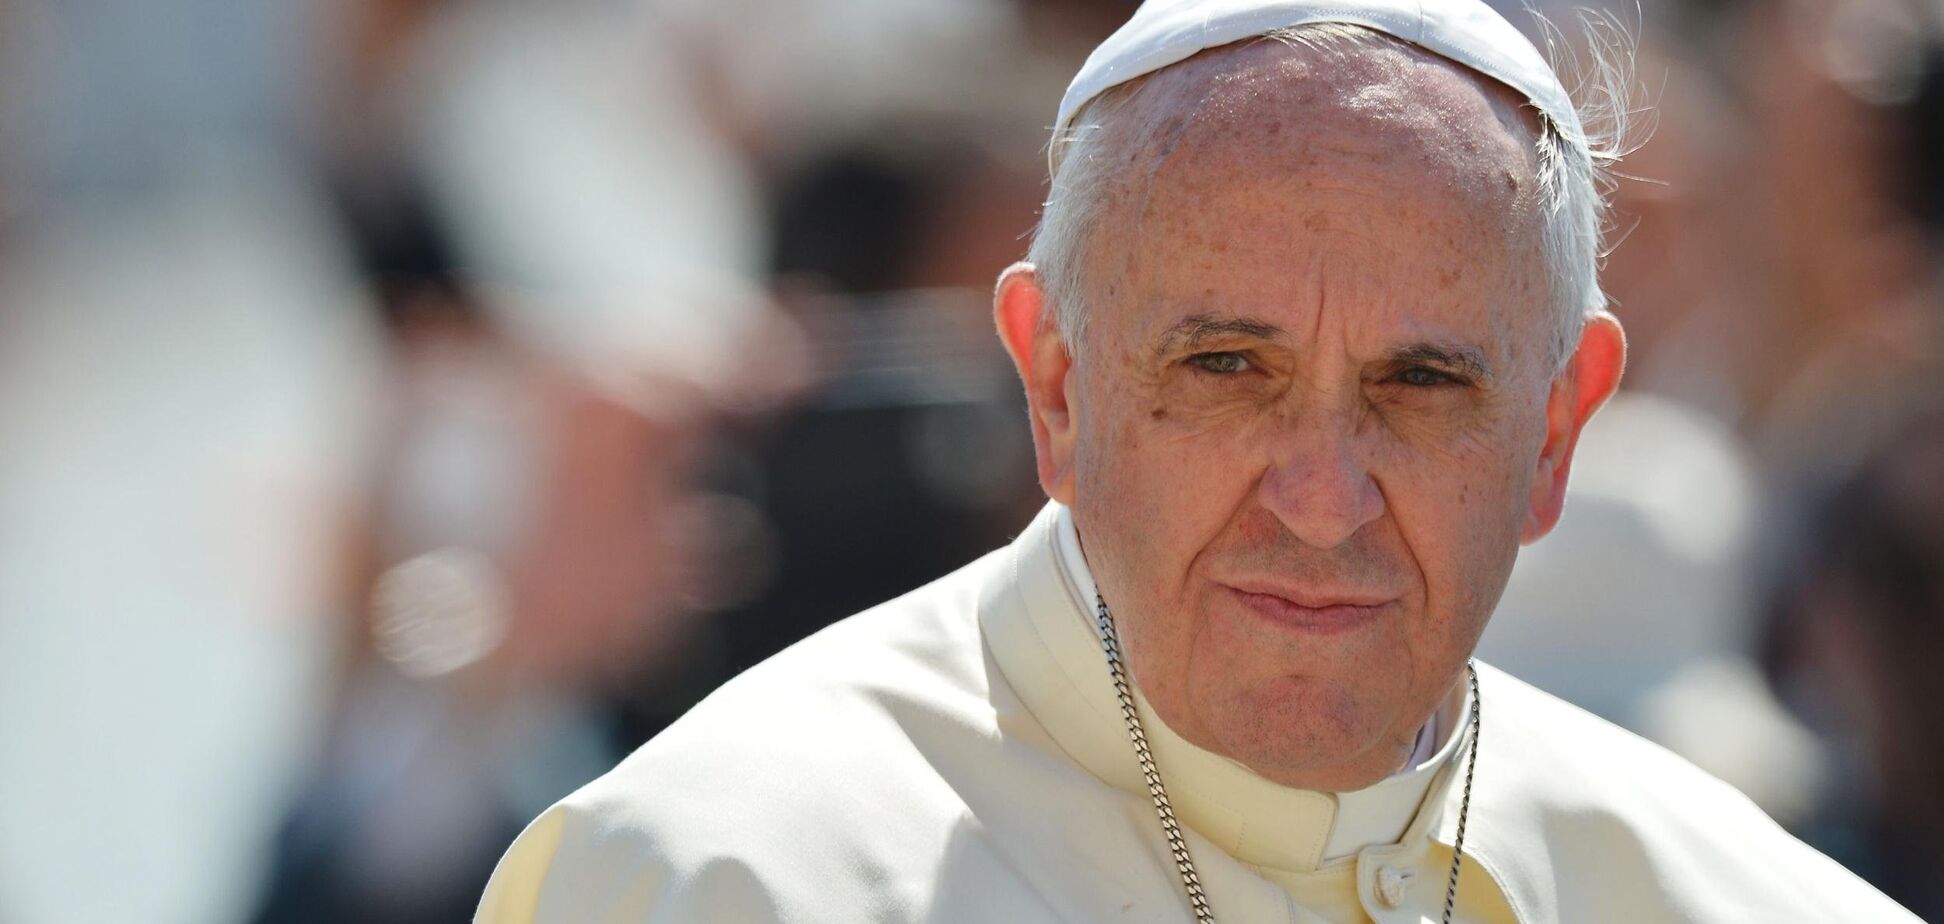 На заметку росСМИ: Папа Римский напугал наказанием за фейки